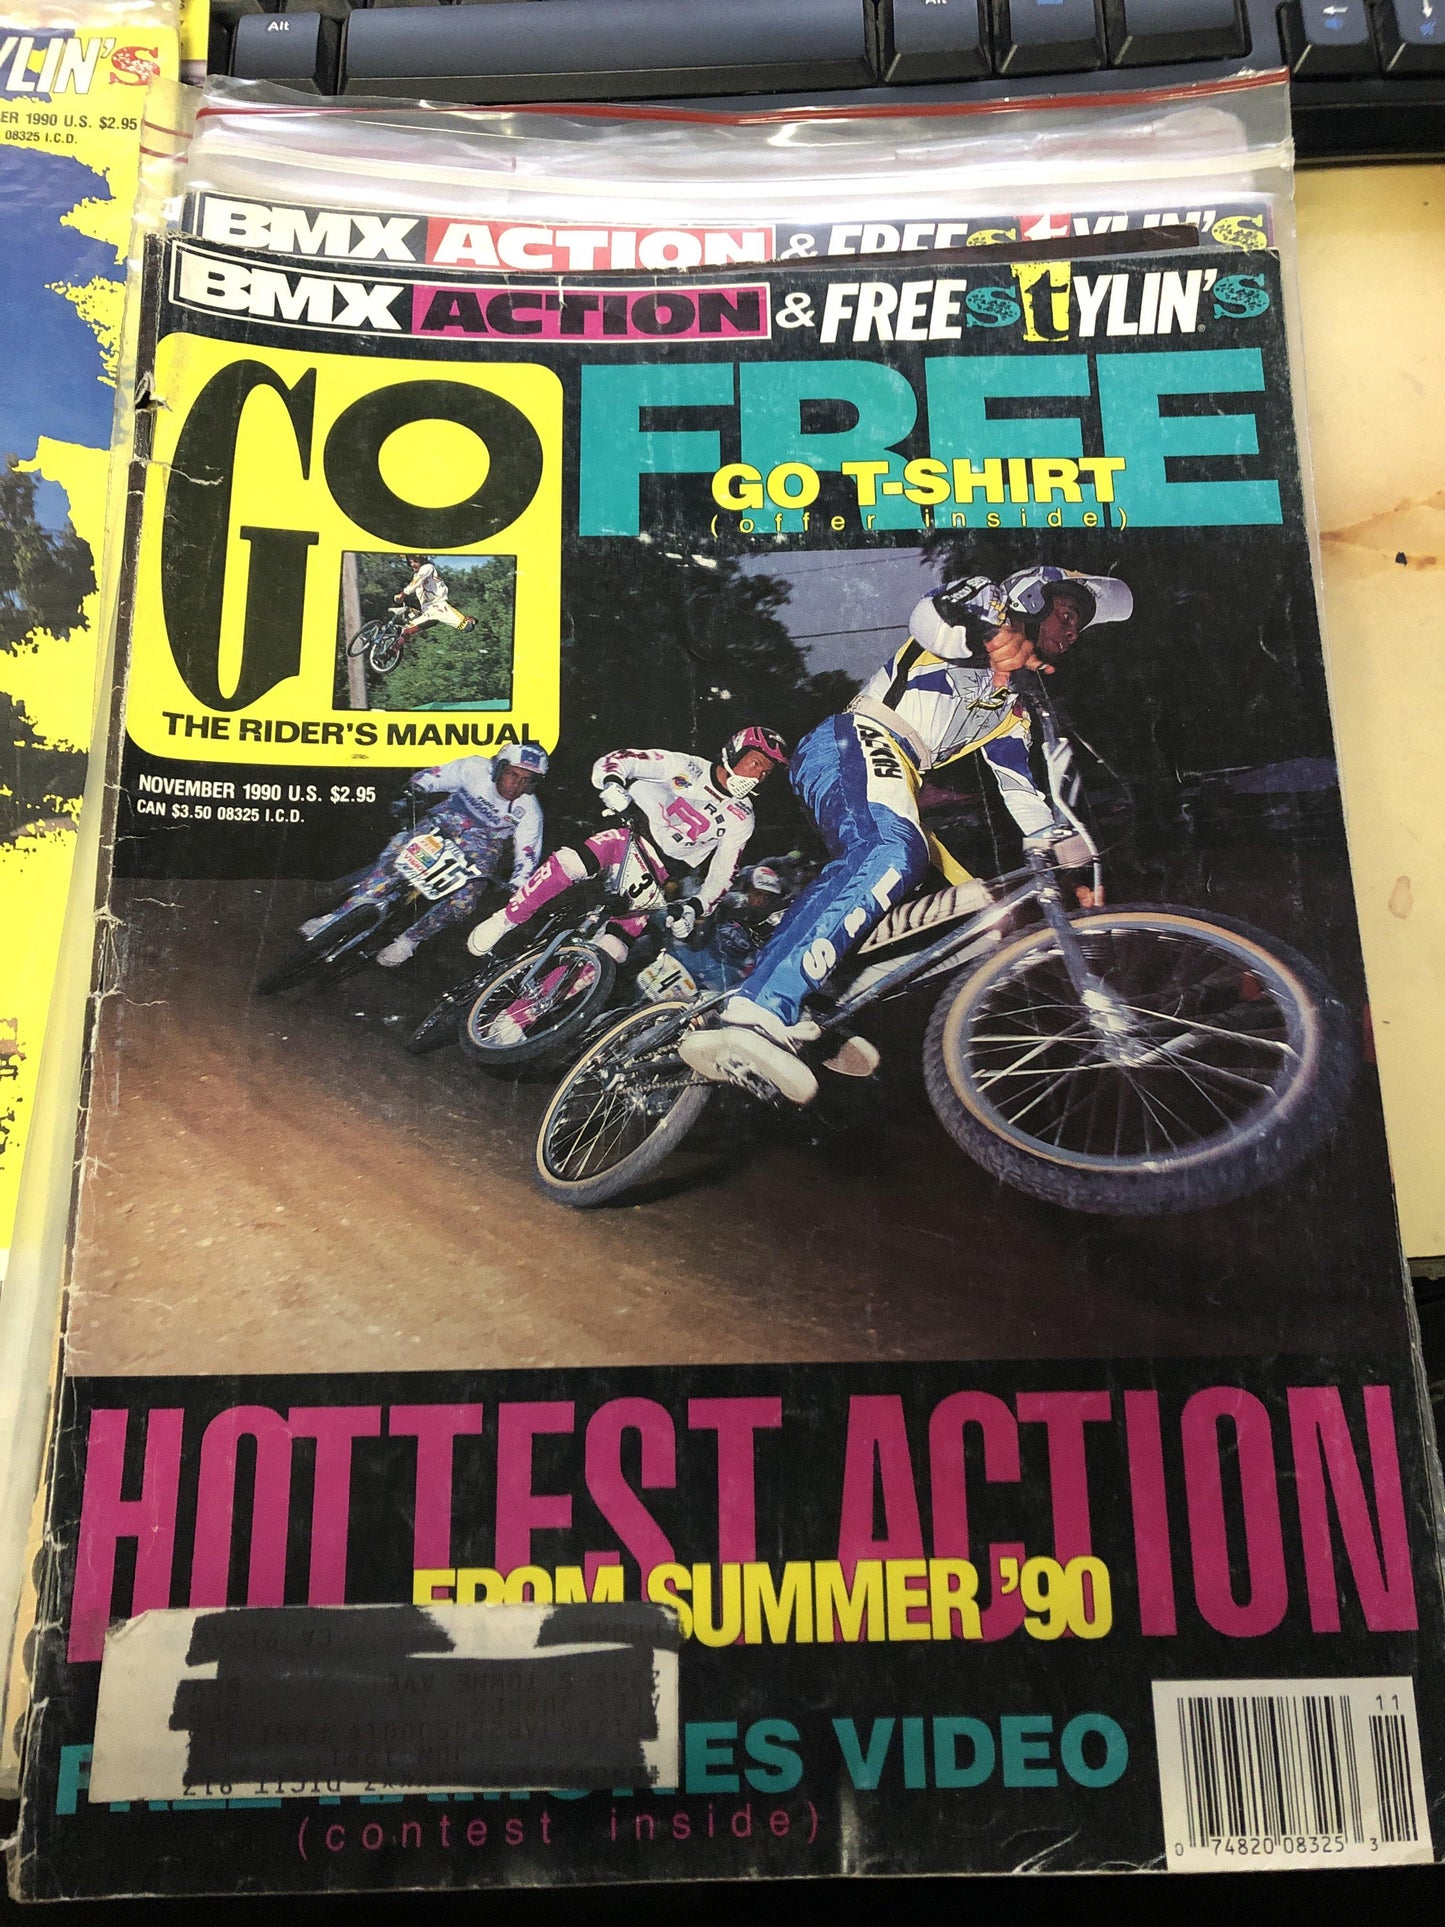 Go bmx magazine 1990 back issues - POWERS BMX